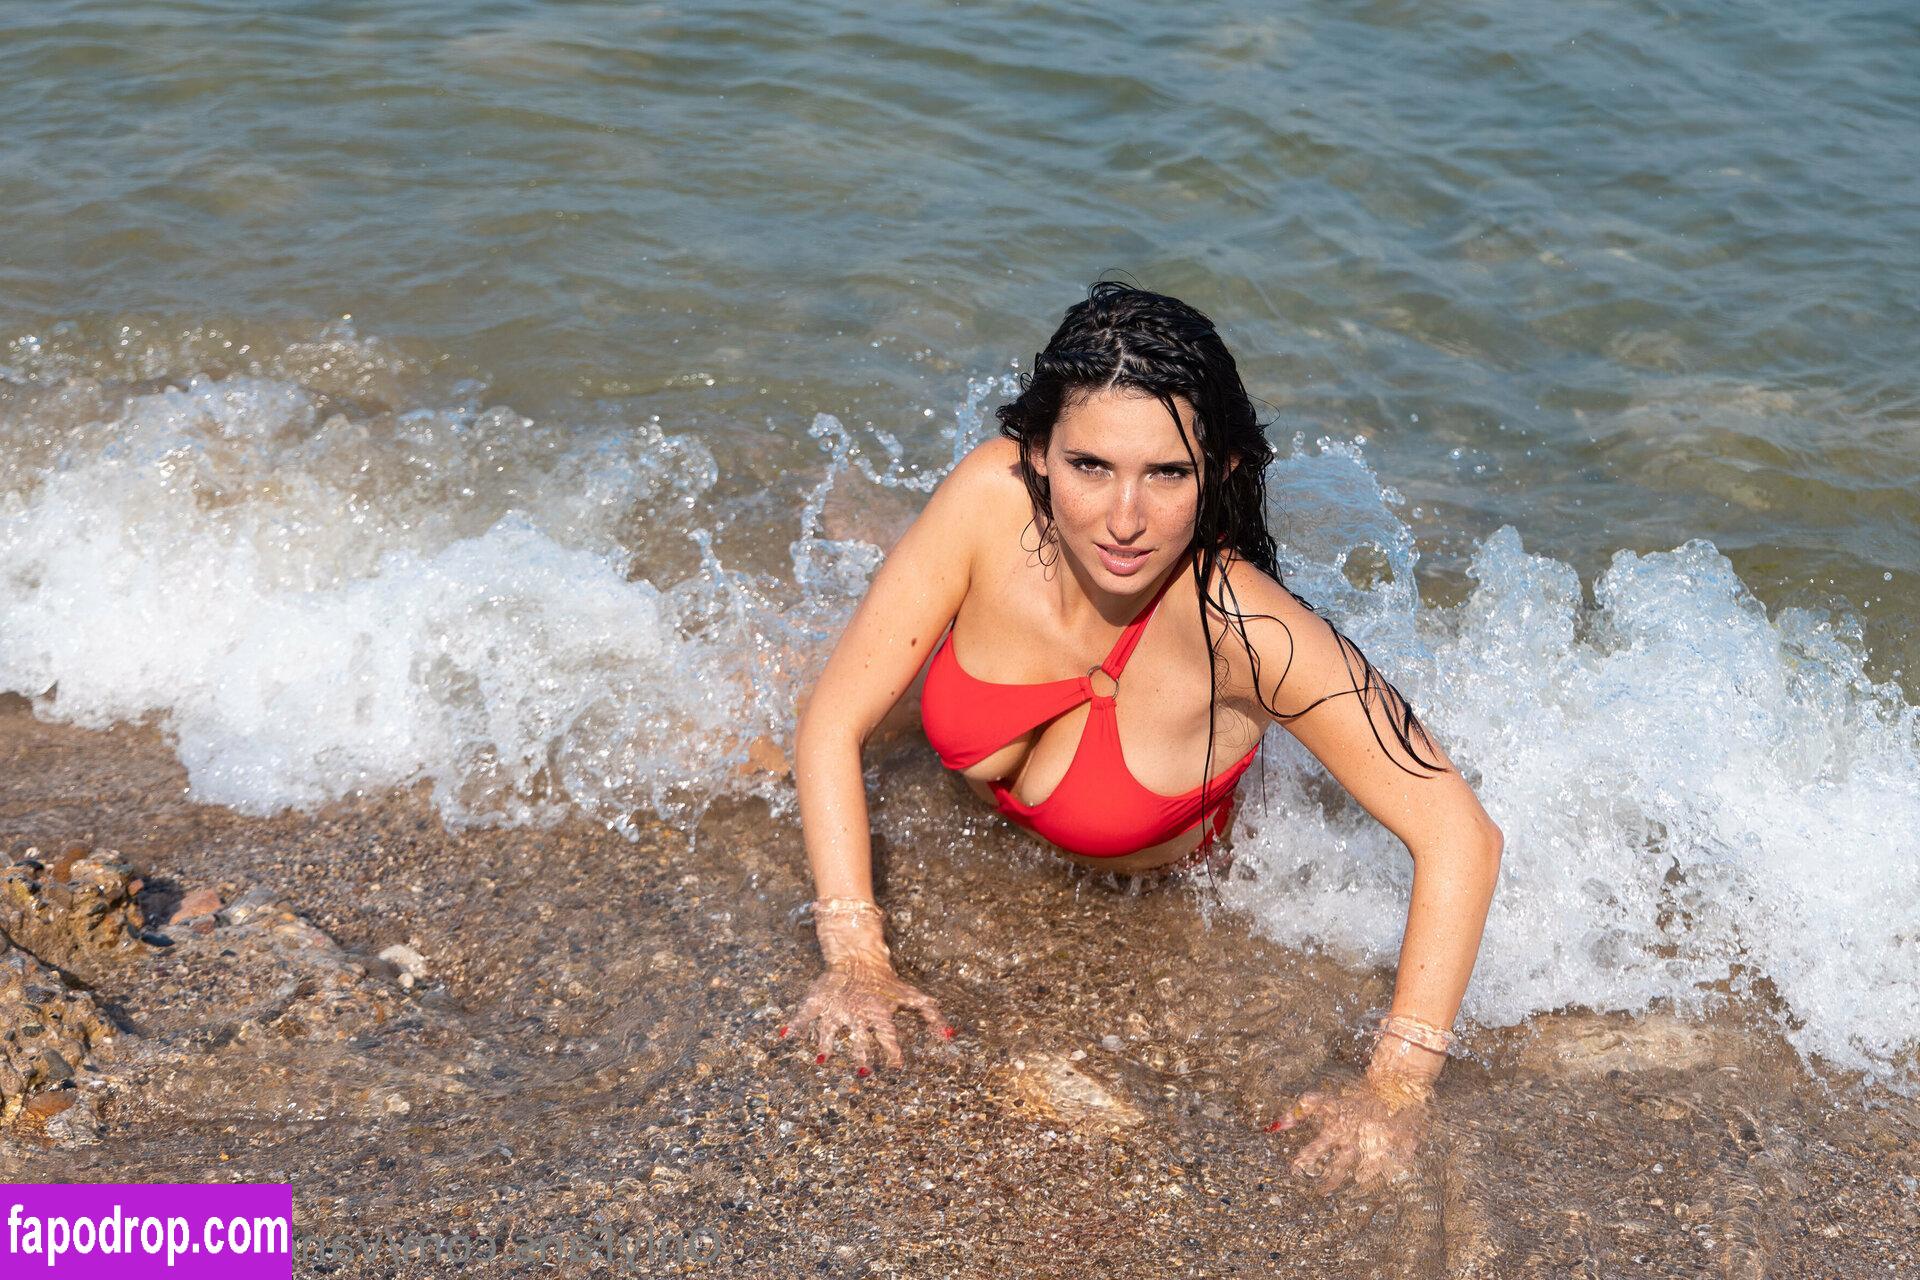 Vanessa Minotti / vanessa_minotti leak of nude photo #0029 from OnlyFans or Patreon